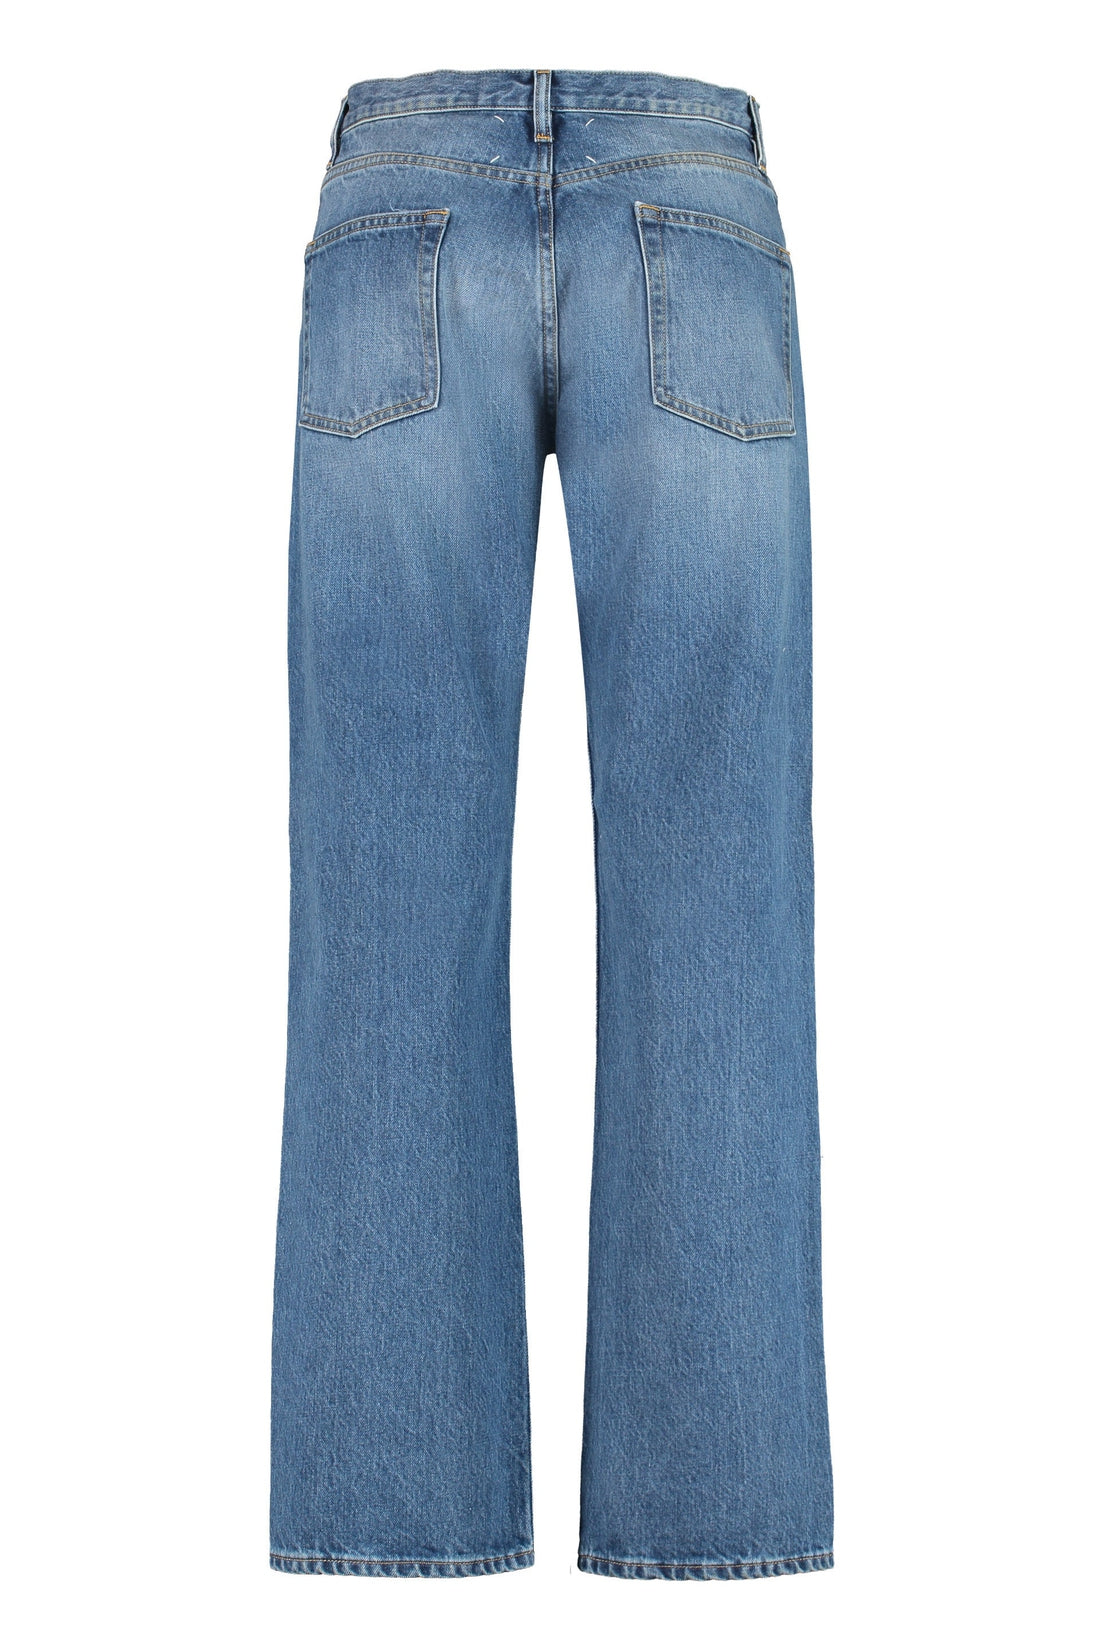 Maison Margiela-OUTLET-SALE-5-pocket jeans-ARCHIVIST